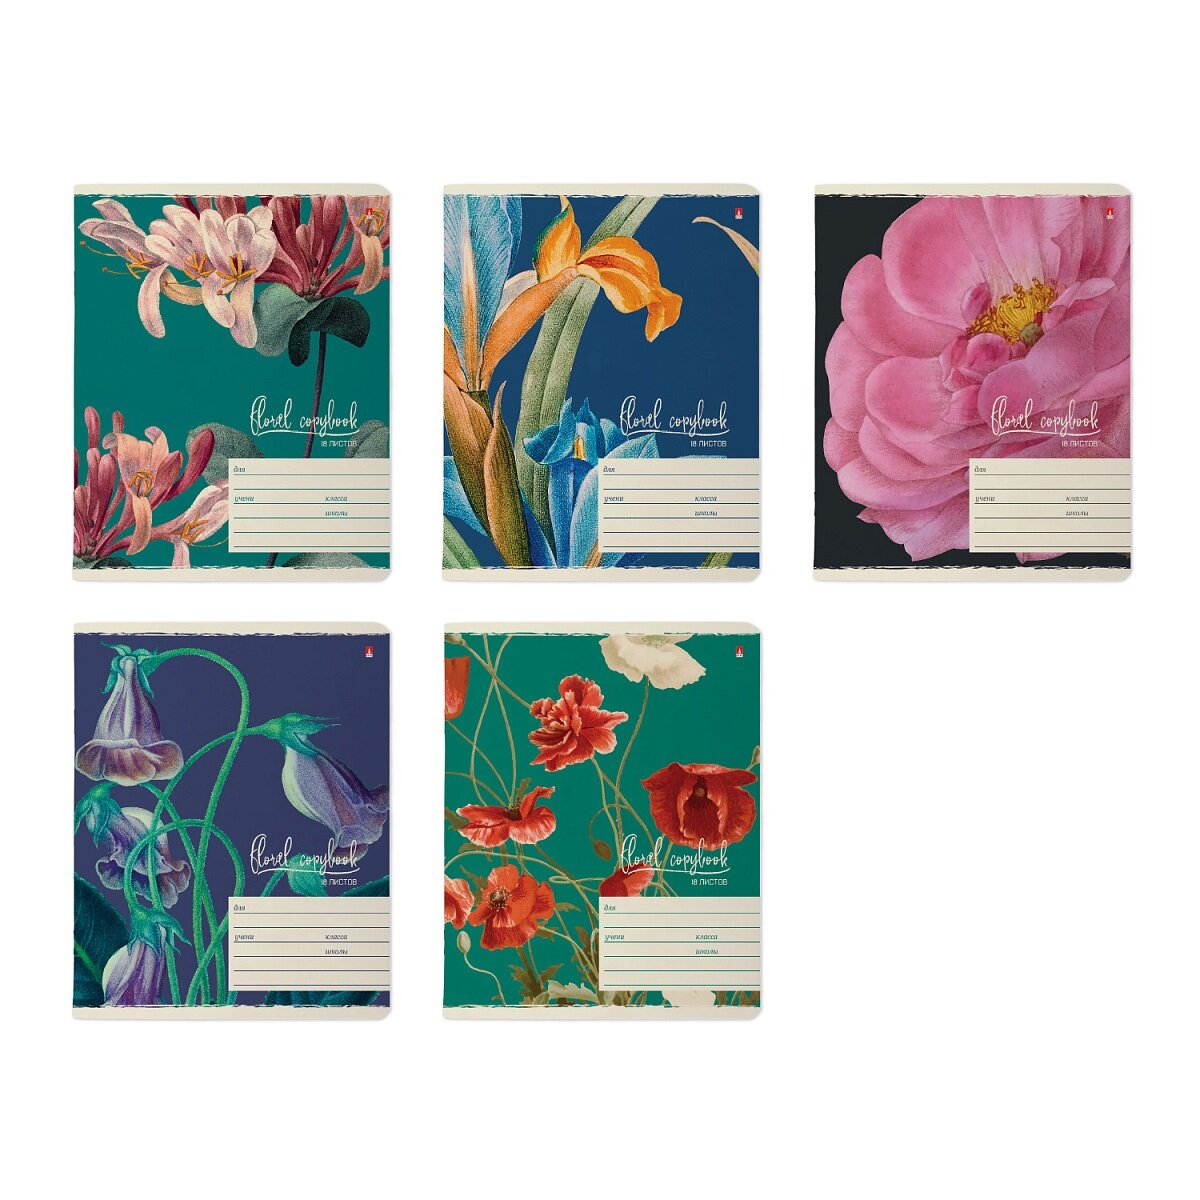 Тетради 18 листов серия "цветы. феерия" в клетку. Набор 10 шт. Цена за 10 шт.5 видов. обложка в ассортименте